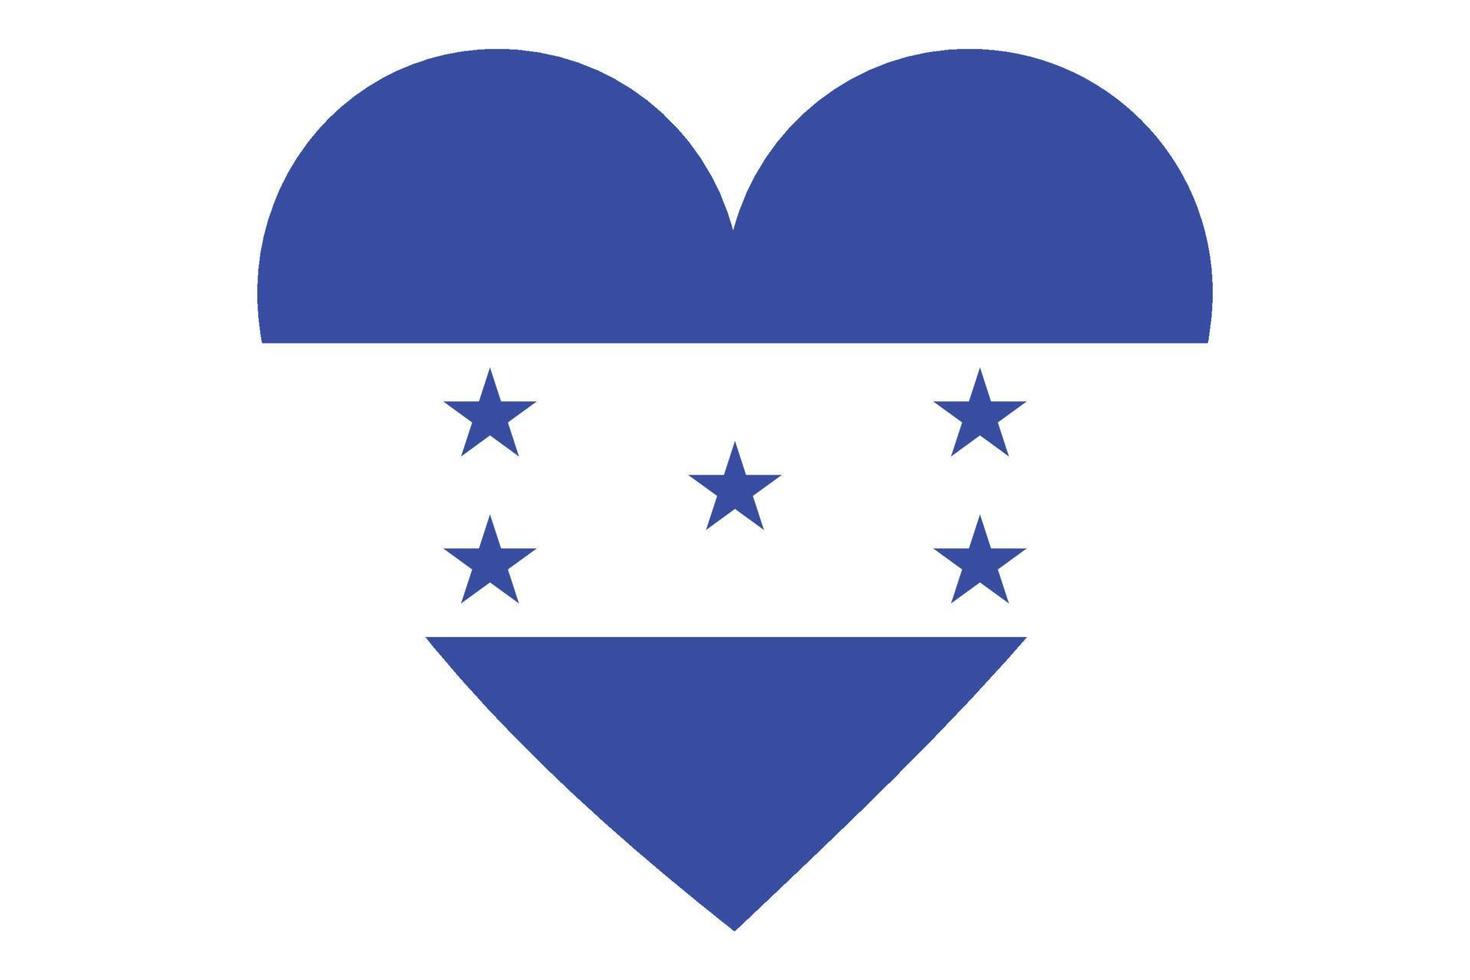 Heart flag vector of Honduras on white background.